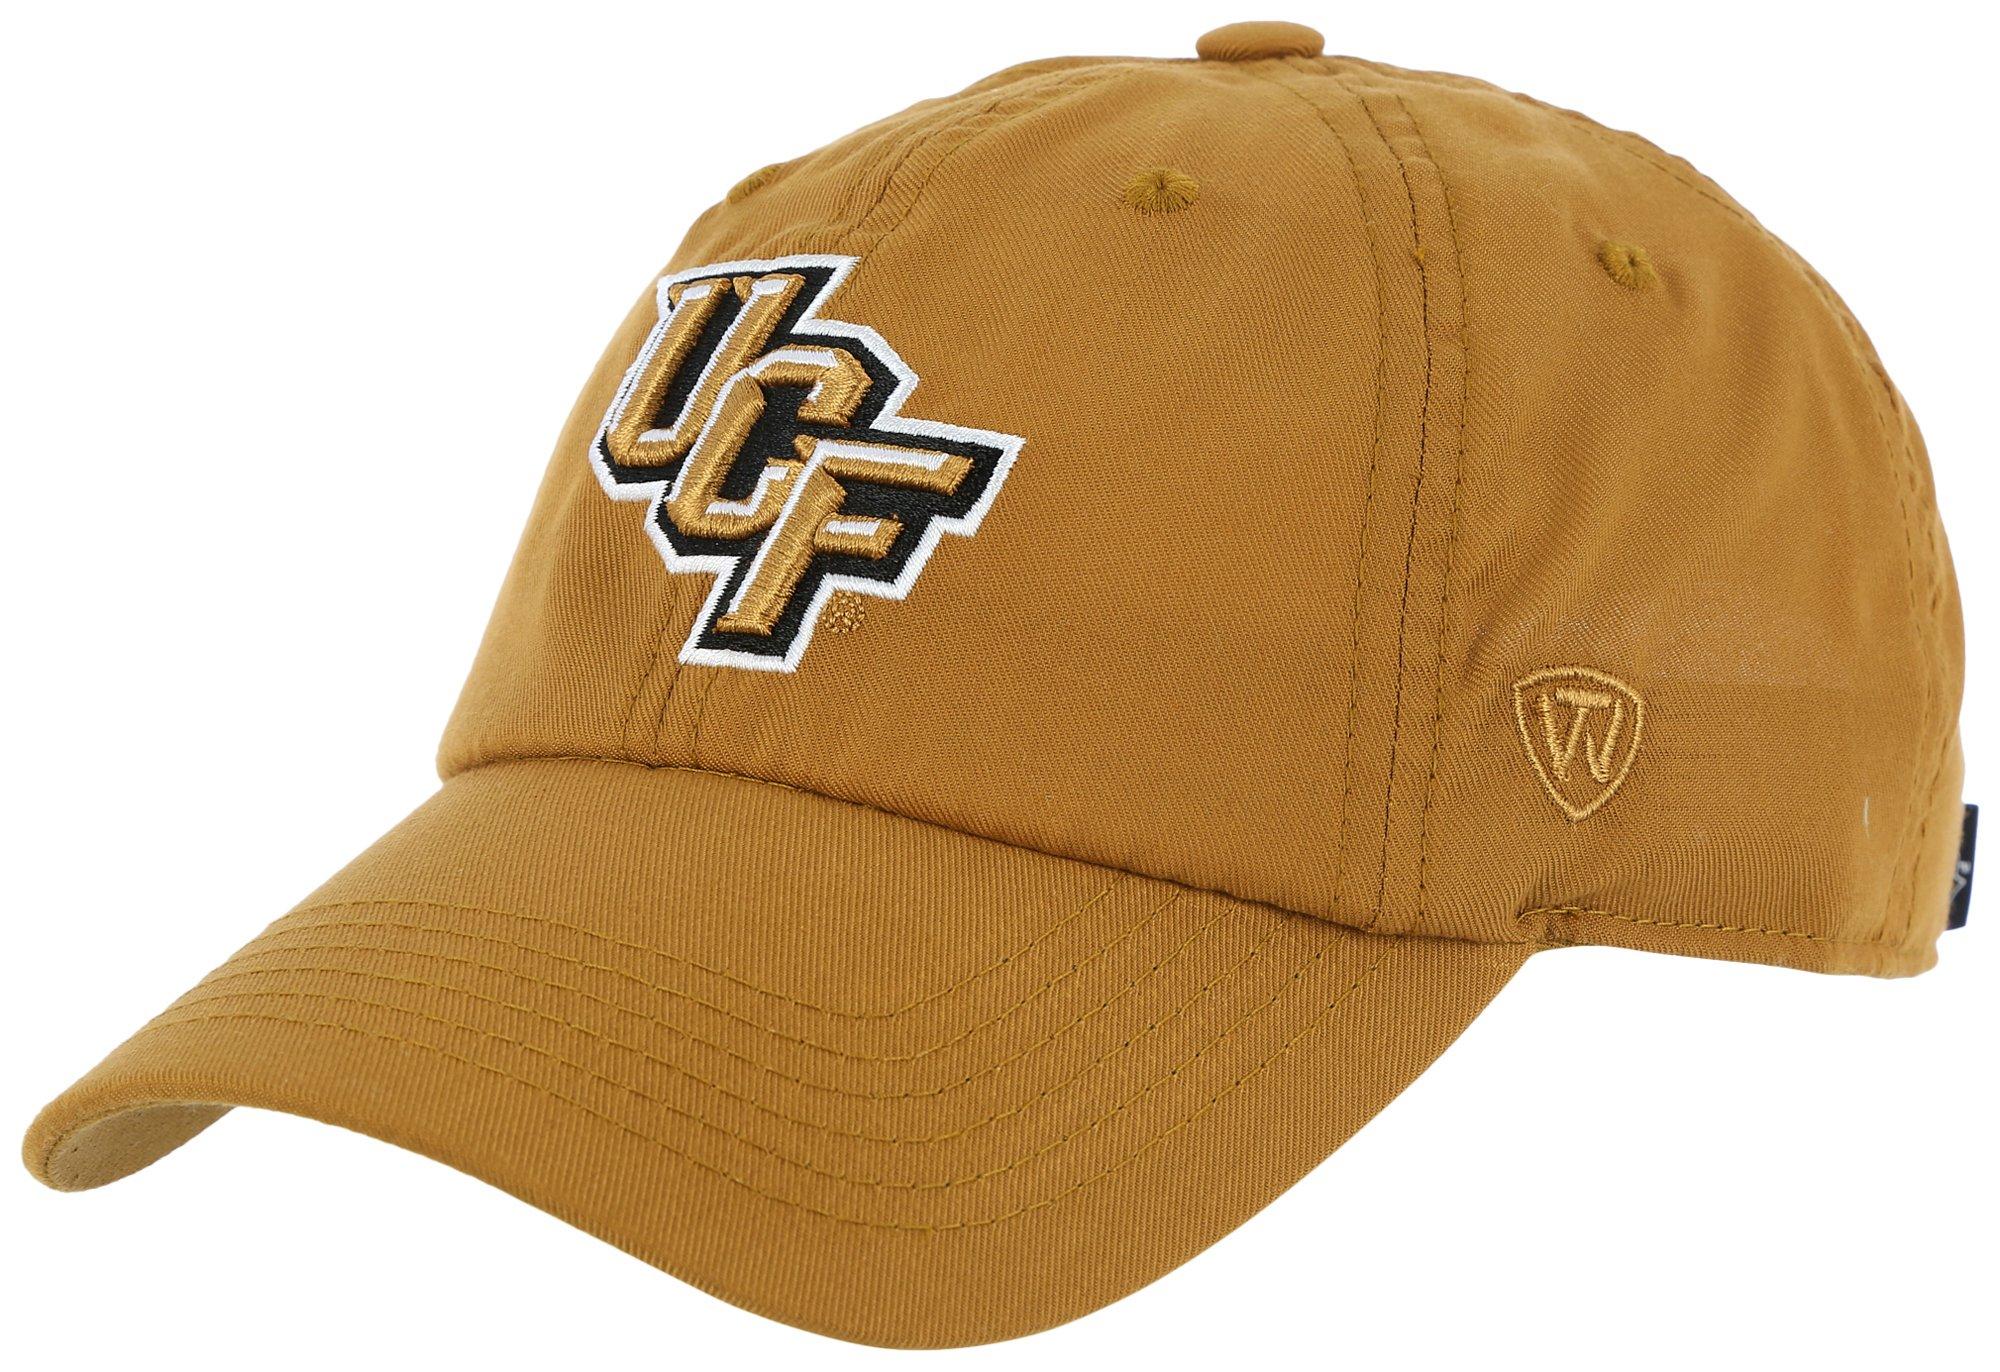 UCF Knights Adjustable Cap